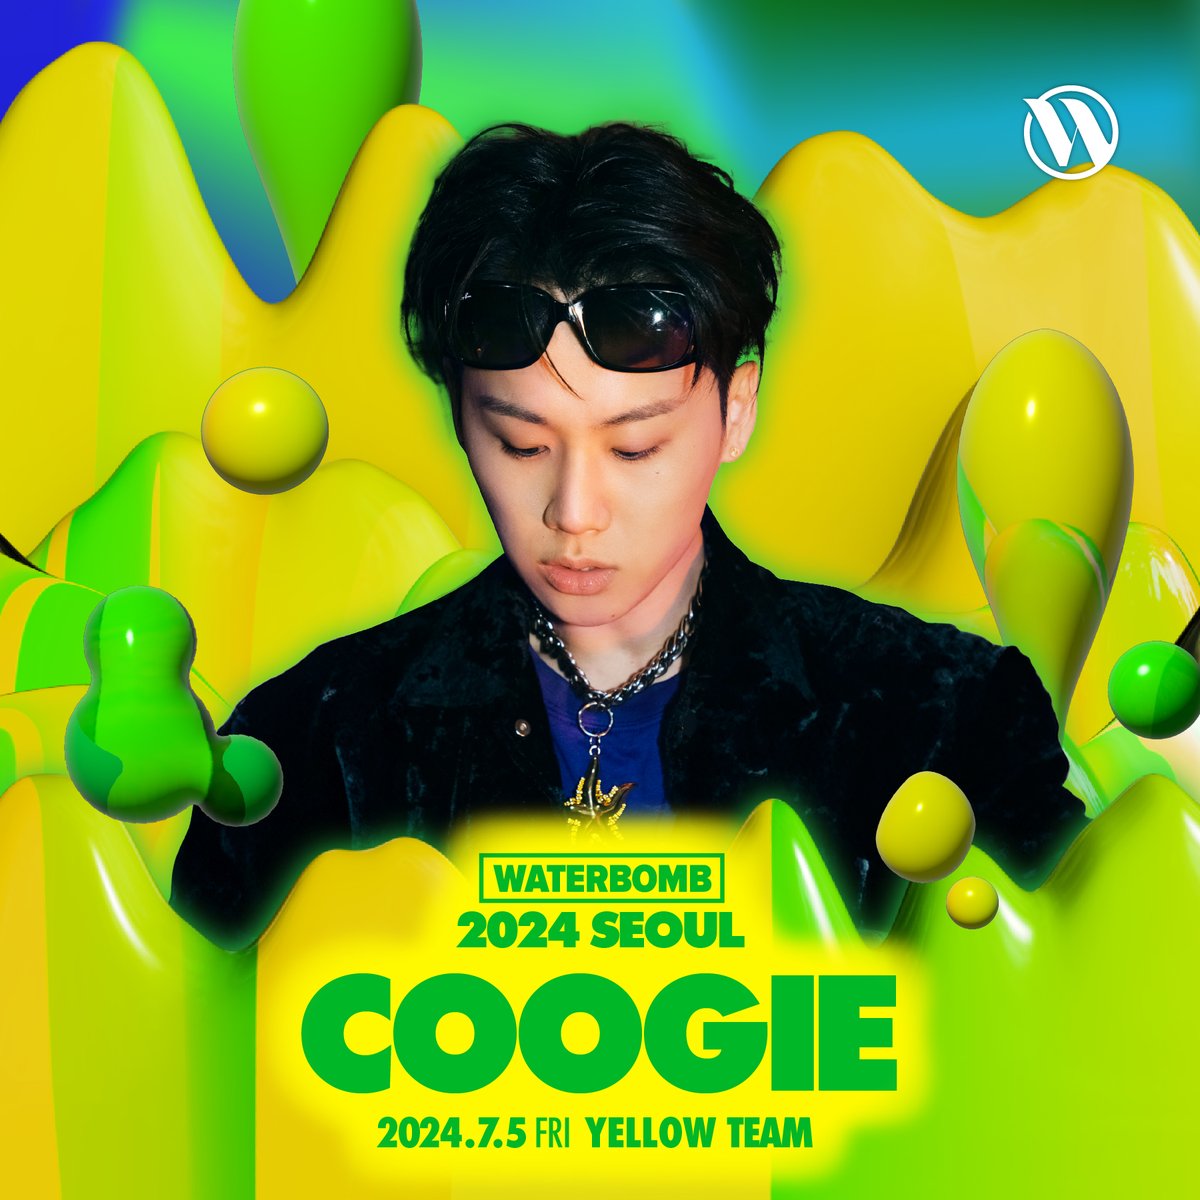 [쿠기 (Coogie)] ㅤ WATERBOMB SEOUL 2024 ㅤ *일자: 2024년 7월 5일(금) ~ 7일(일) *장소: 추후 공개 ㅤ DAY 1 (7/5 FRI) - 쿠기 (Coogie) ㅤ More details @waterbomb_seoul ㅤ @coogie #쿠기 #Coogie @waterbomb_seoul #WATERBOMB #WATERBOMB2024 #AOMG